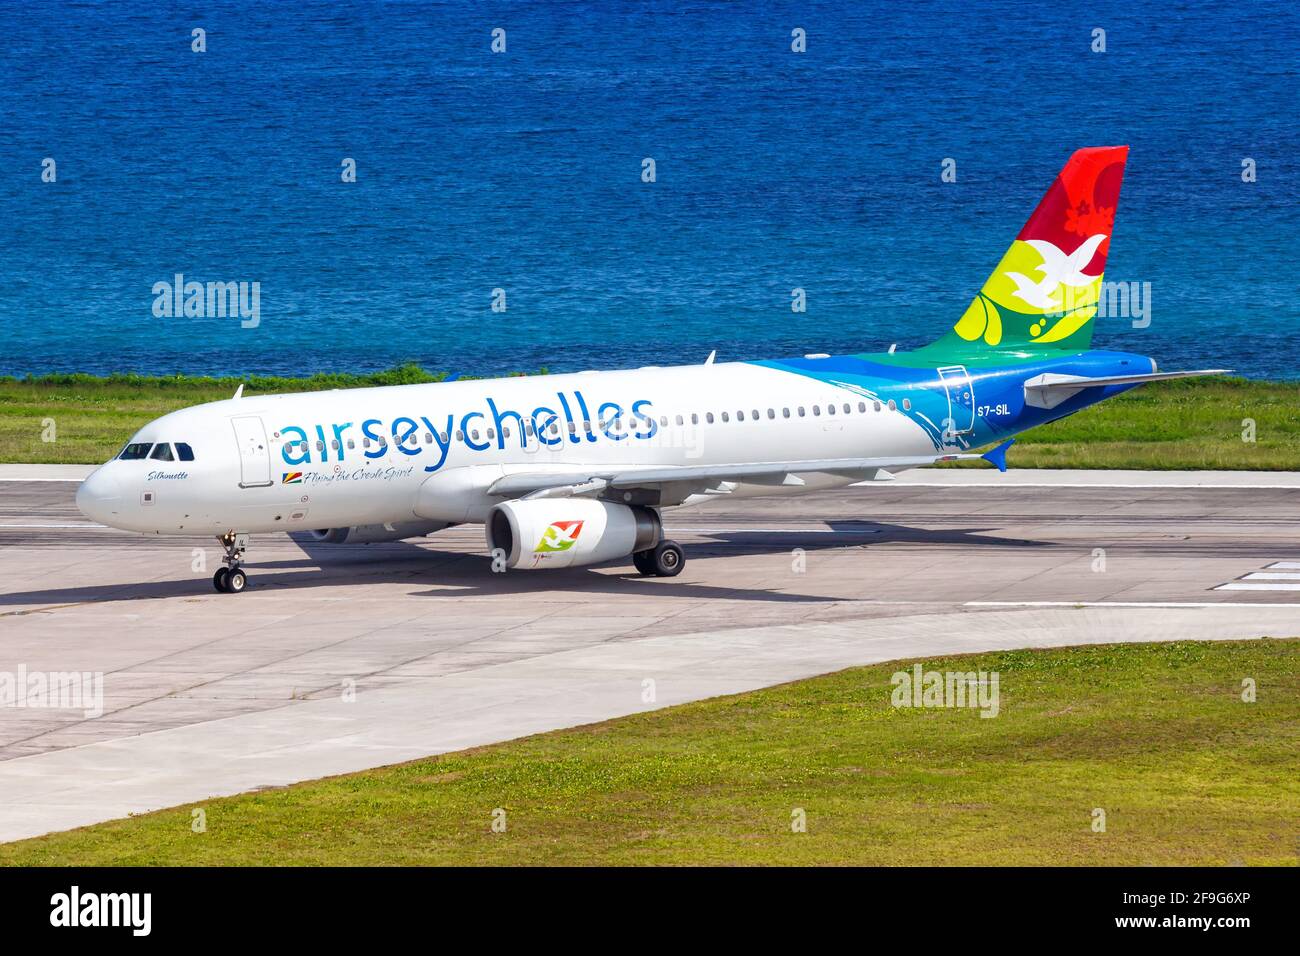 Mahé, Seychelles - 24 novembre 2017 : avion Airbus A320 d'Air Seychelles à l'aéroport international des Seychelles (SEZ) aux Seychelles. Airbus est un EUR Banque D'Images